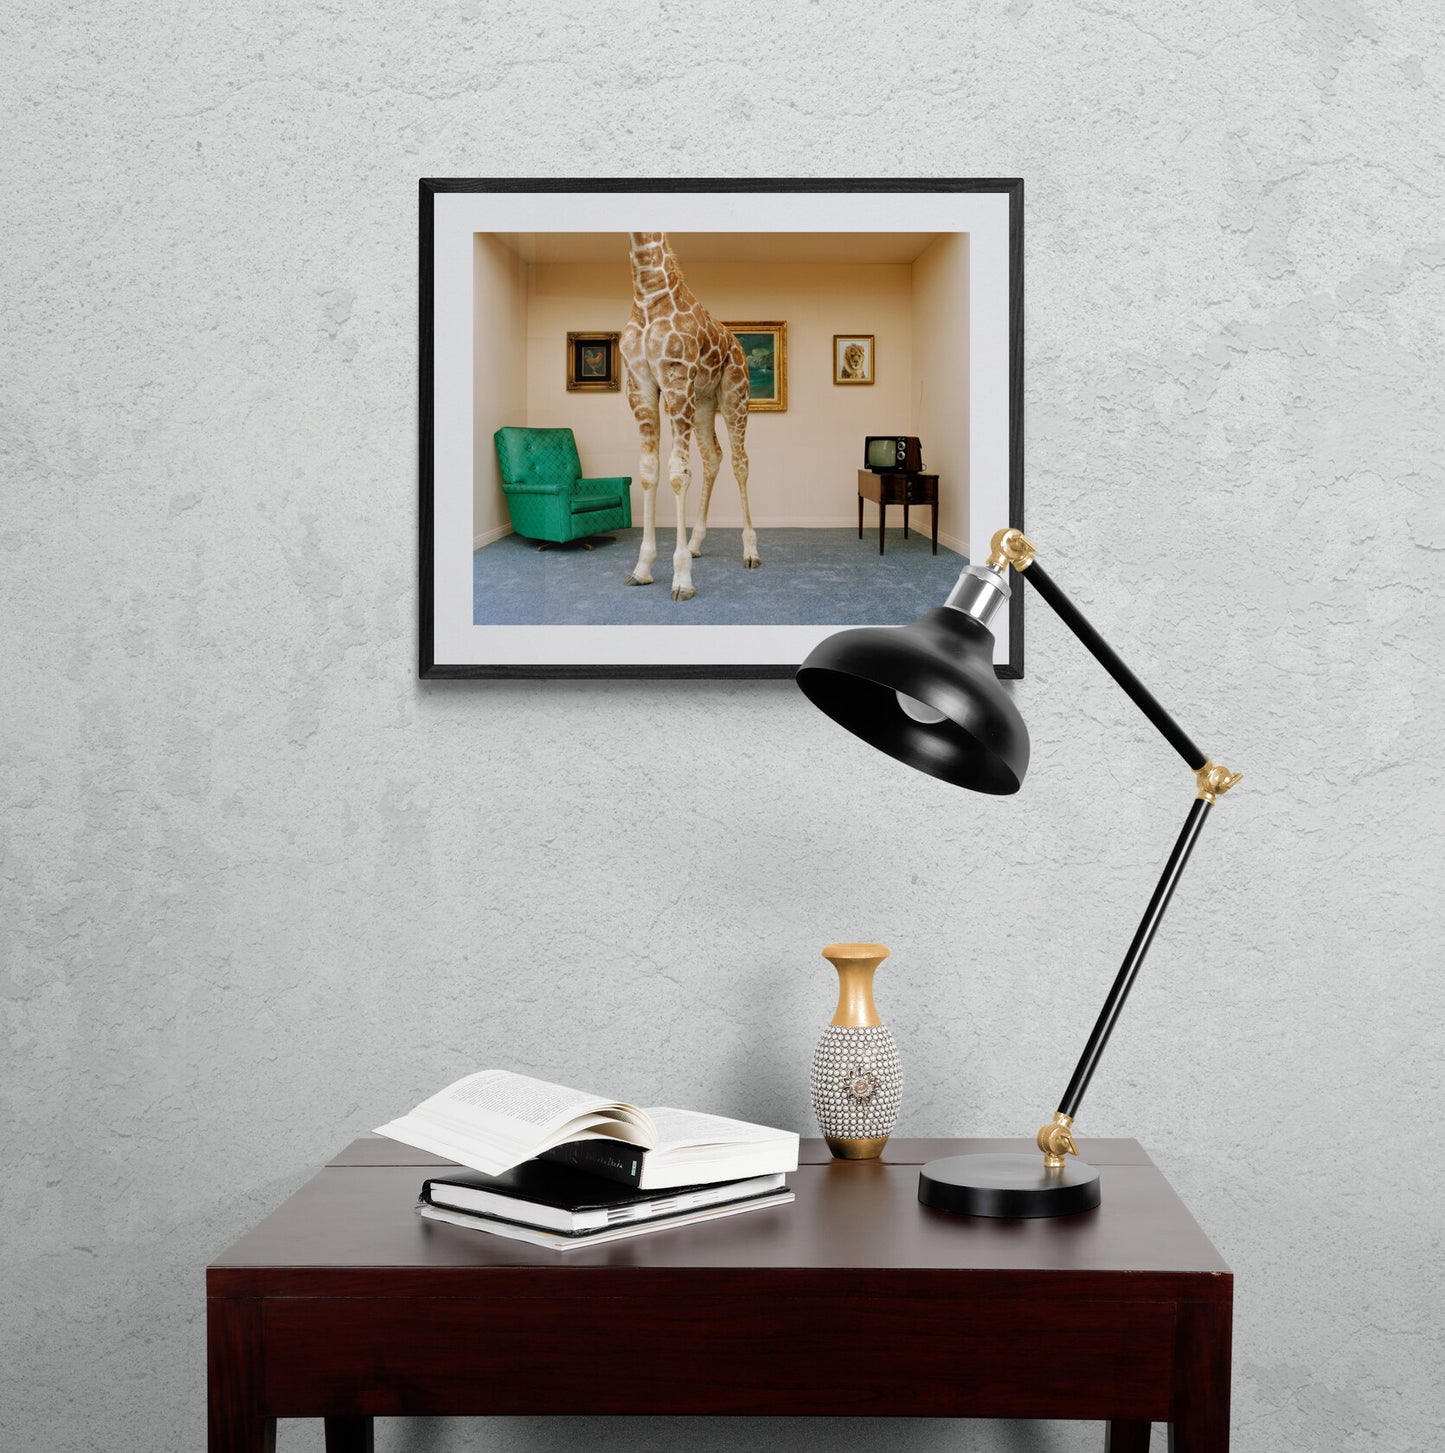 Giraffe in Living Room by Matthias Clamer